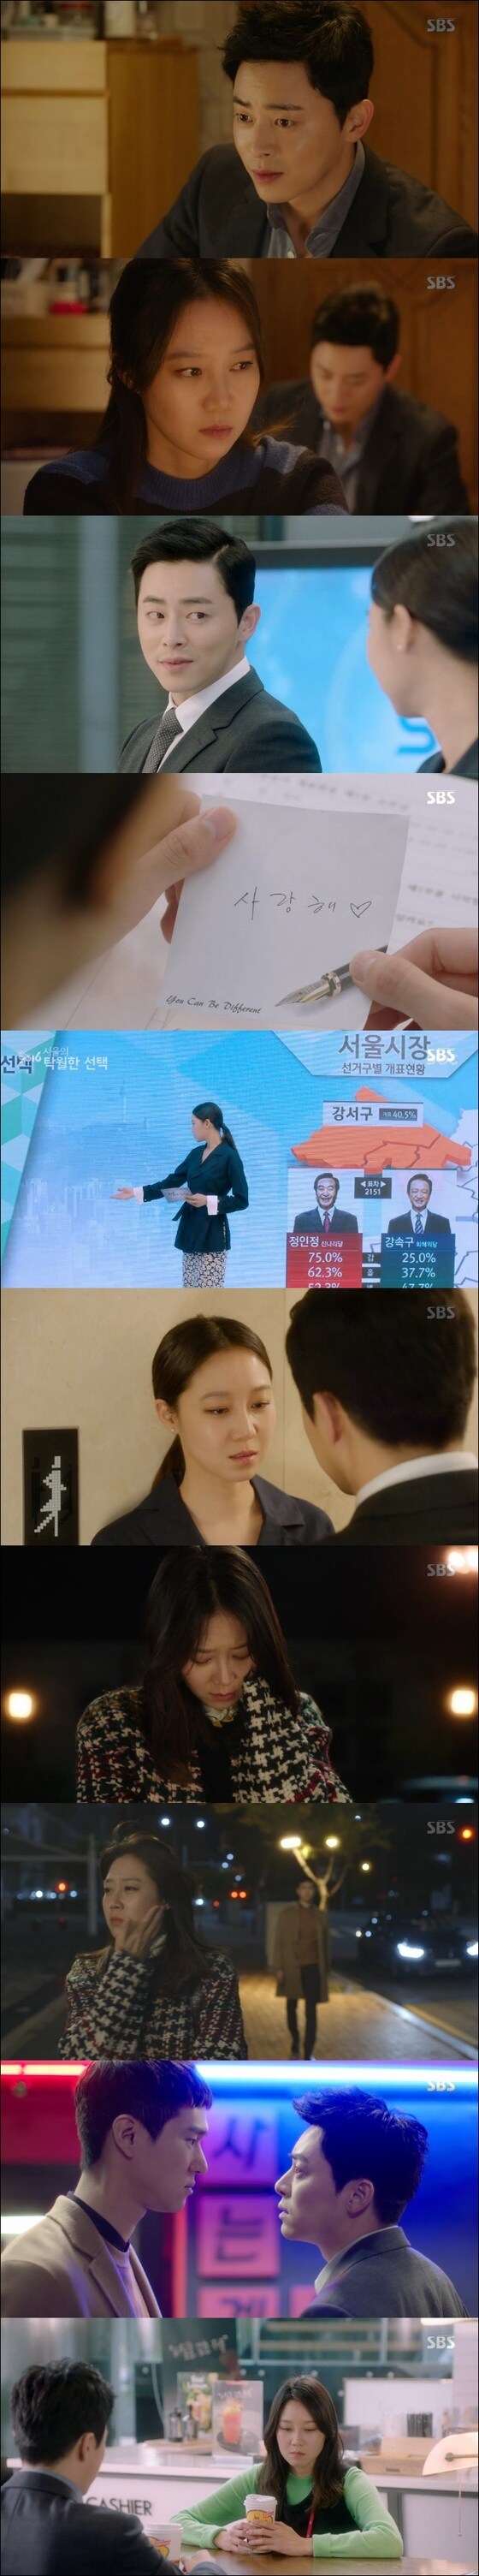 조정석, 공효진이 알콩달콩한 연애를 이어갔다. © News1star / SBS '질투의 화신' 캡처